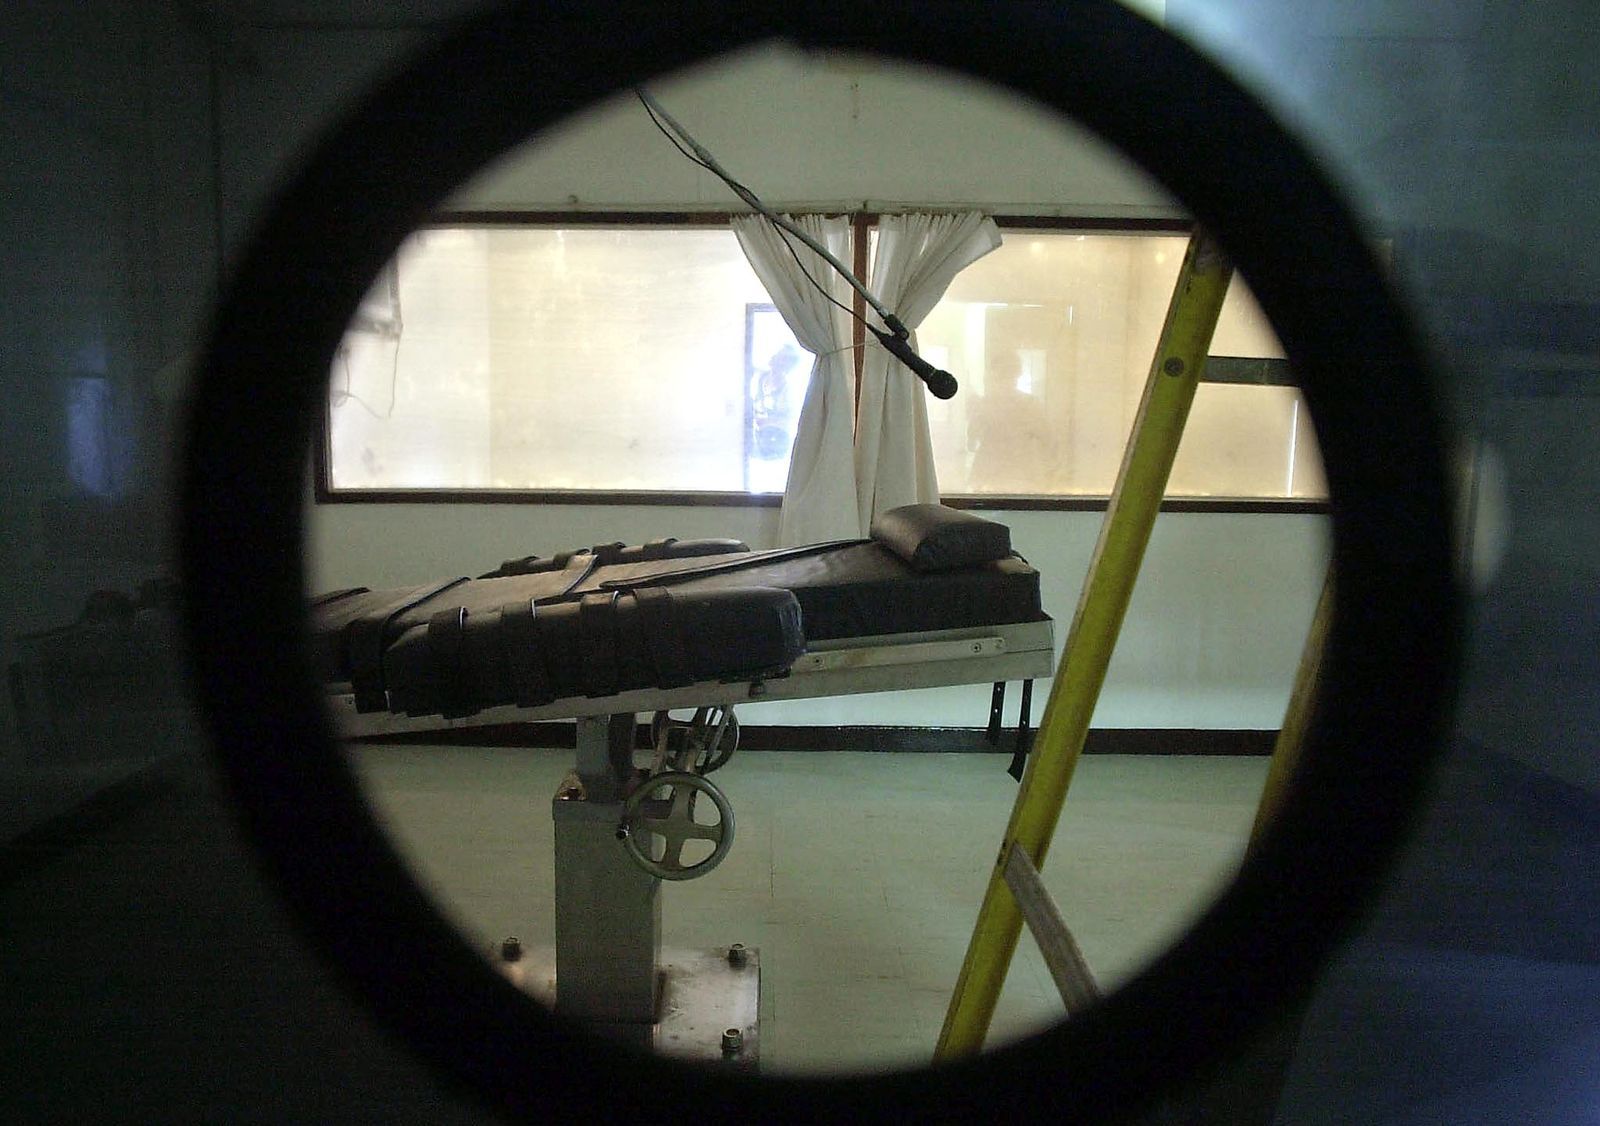 เตียง-ประหารชีวิต-ฉีดยาตาย-ฟิลิปปินส์-AFP